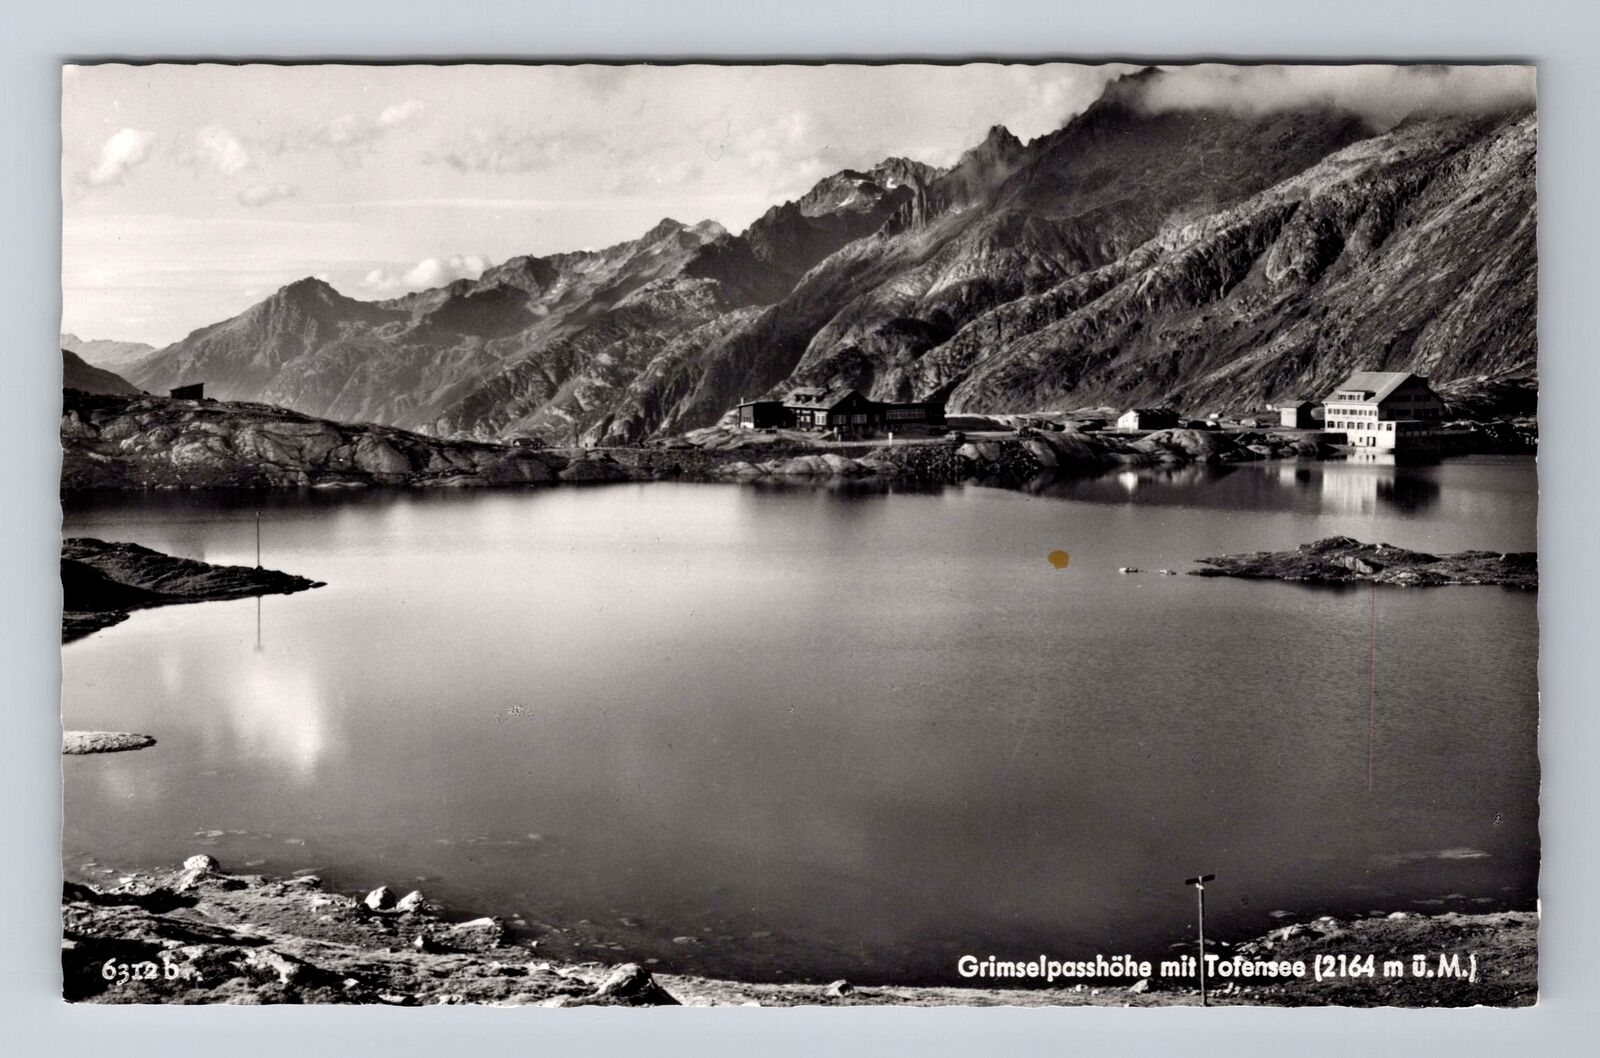 RPPC-Switzerland, Grimselpasshohe mit Tofensee, Antique, Vintage Postcard